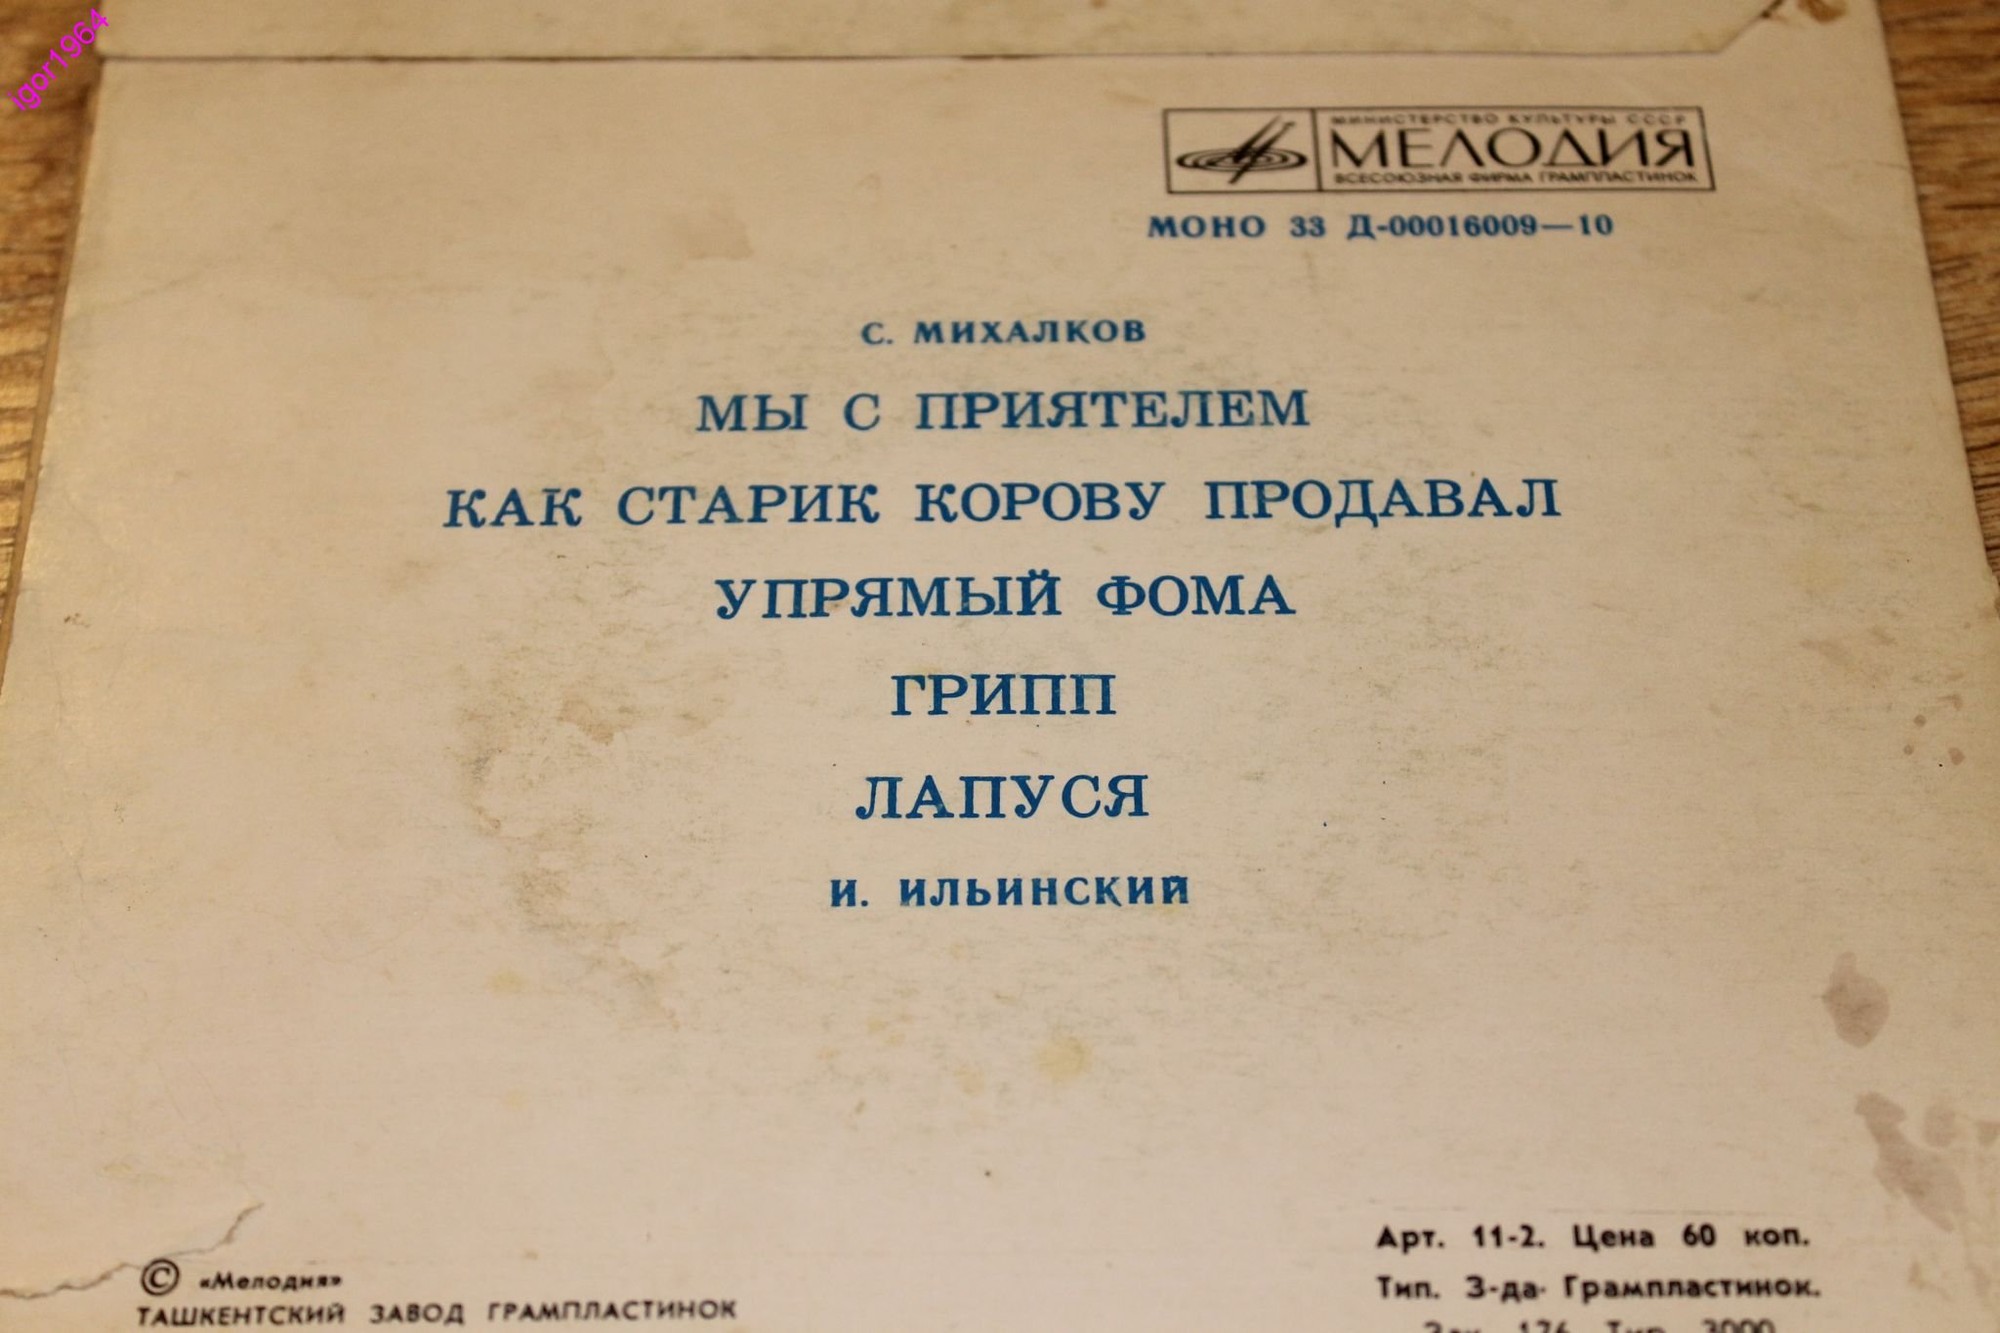 С. МИХАЛКОВ (1913-2009) "Стихи для детей" (И. Ильинский)